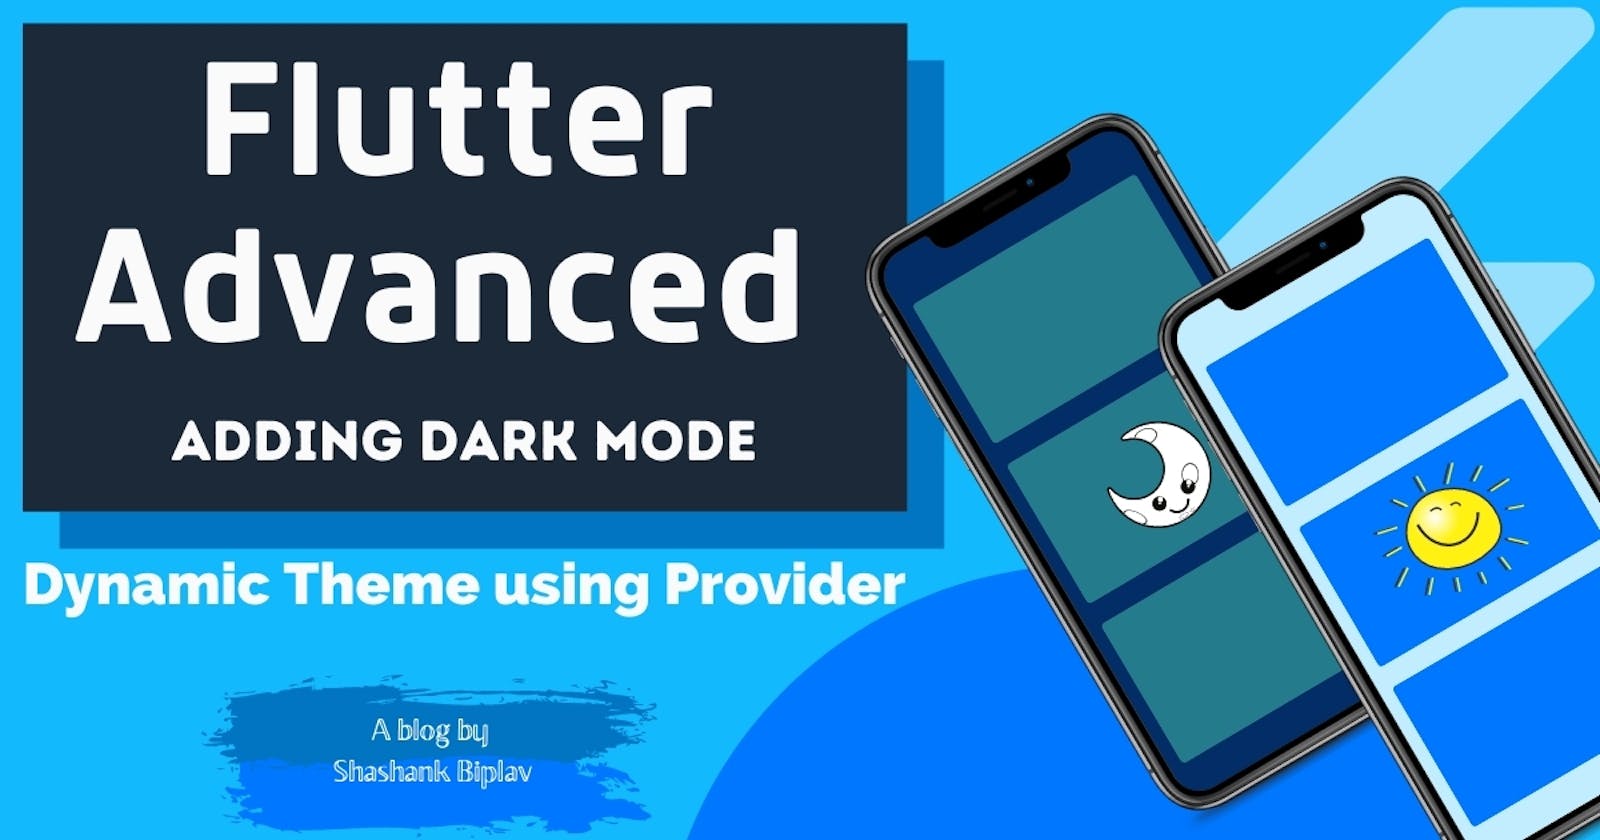 Flutter Advanced - Adding Dark Mode using Provider